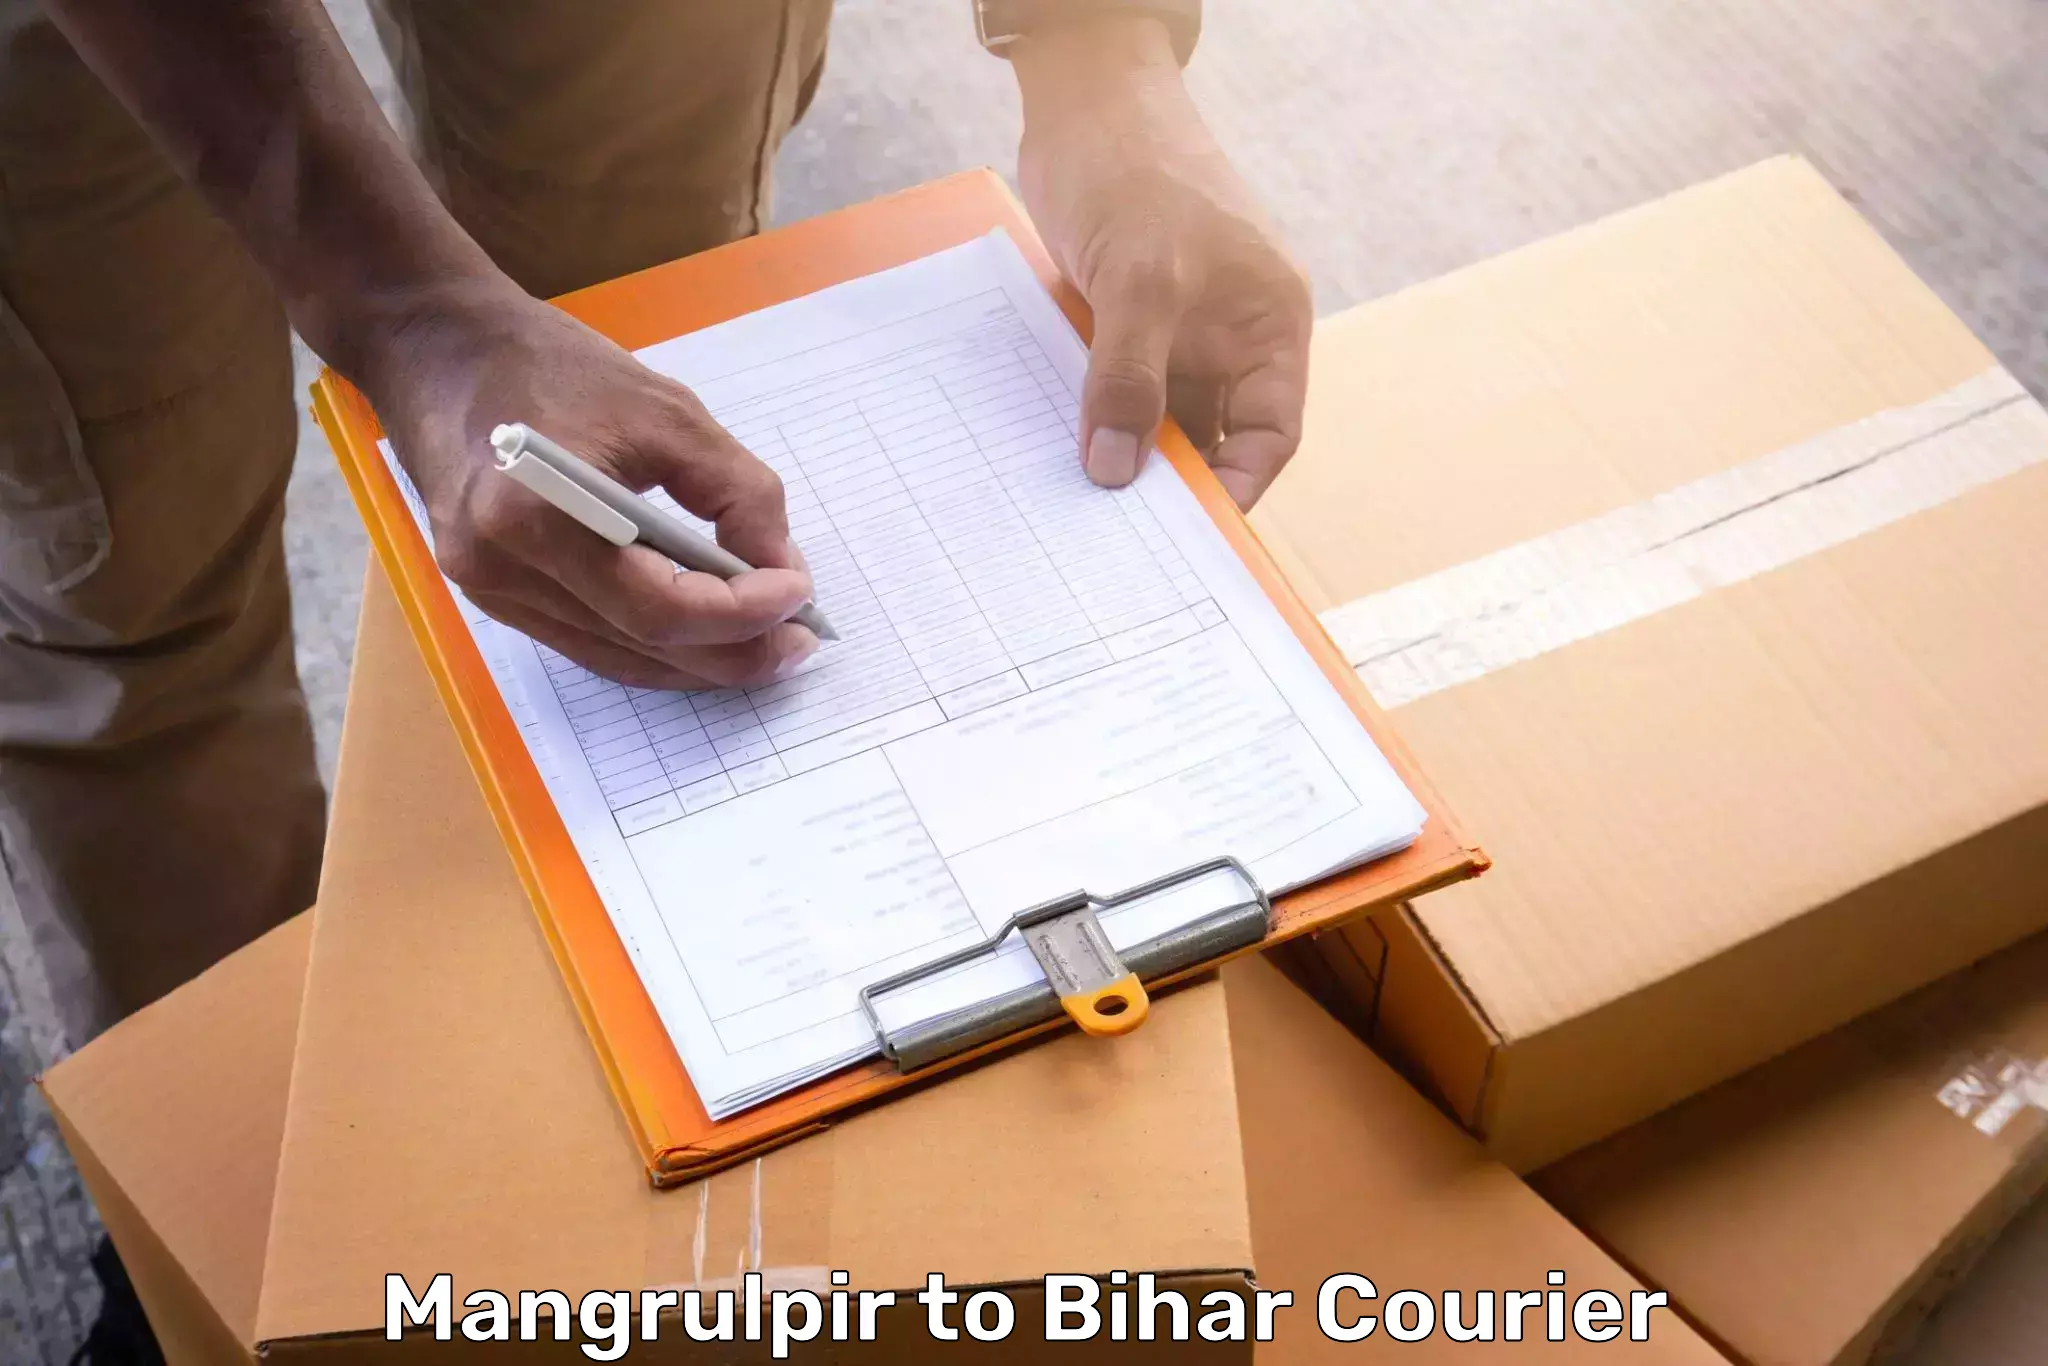 Baggage shipping logistics Mangrulpir to Bihar